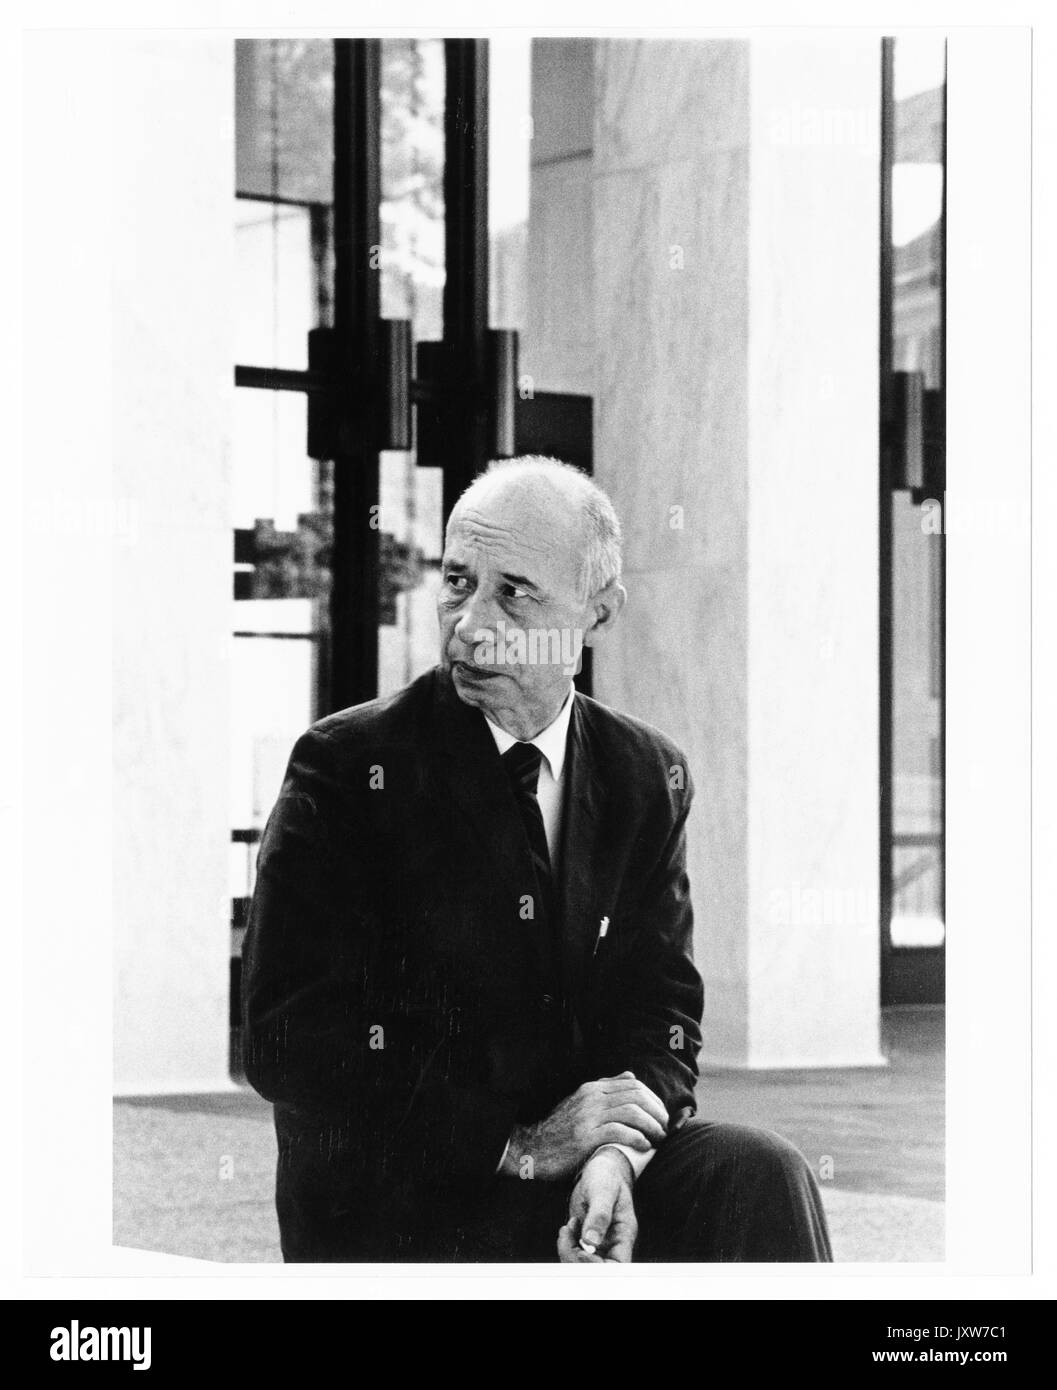 John hallock berthel, assis en face de mse bibliothèque, vue de trois-quarts, 1960. Banque D'Images